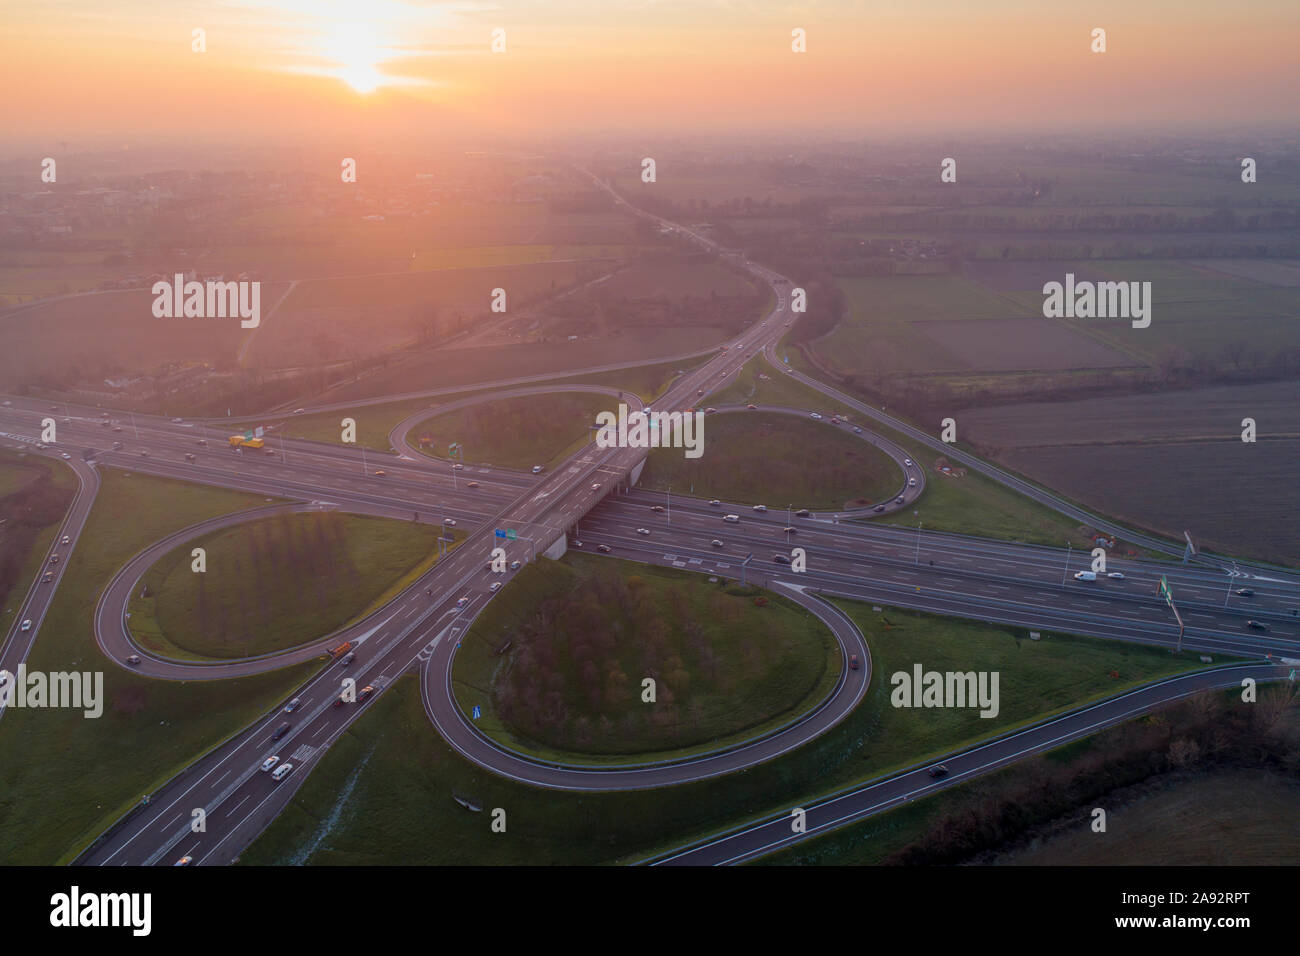 Kleeblatt interchange von oben gesehen. Luftaufnahme von Highway Kreuzung in der Poebene in der Nähe von Mailand bei Sonnenuntergang. Bird's Eye View. Stockfoto